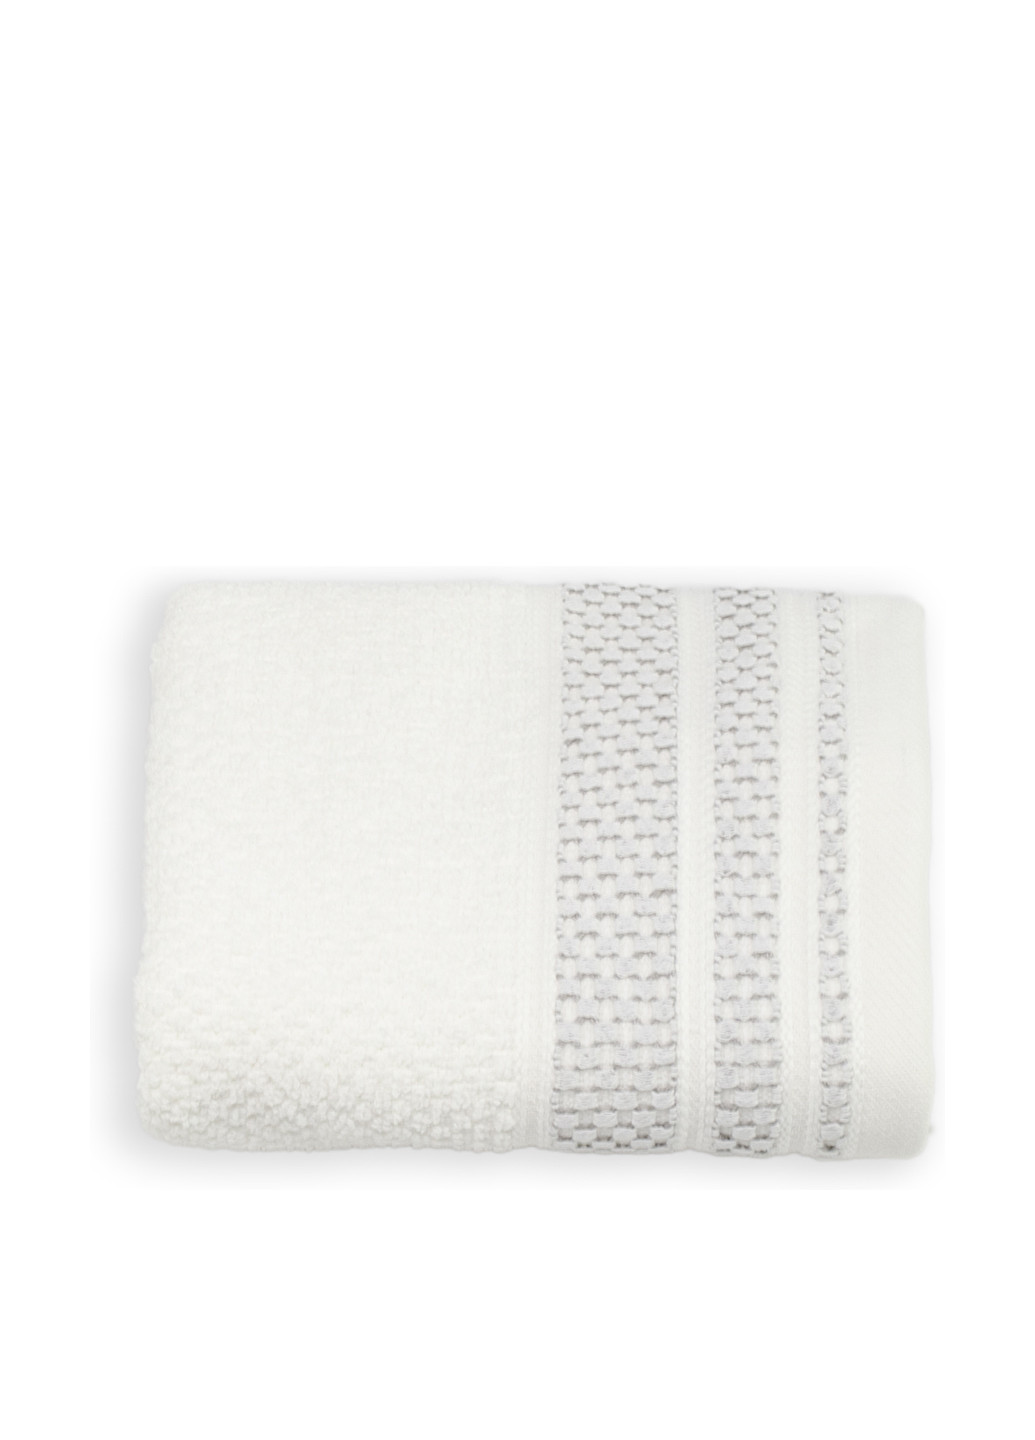 No Brand полотенце, 40х55 см полоска белый производство - Турция